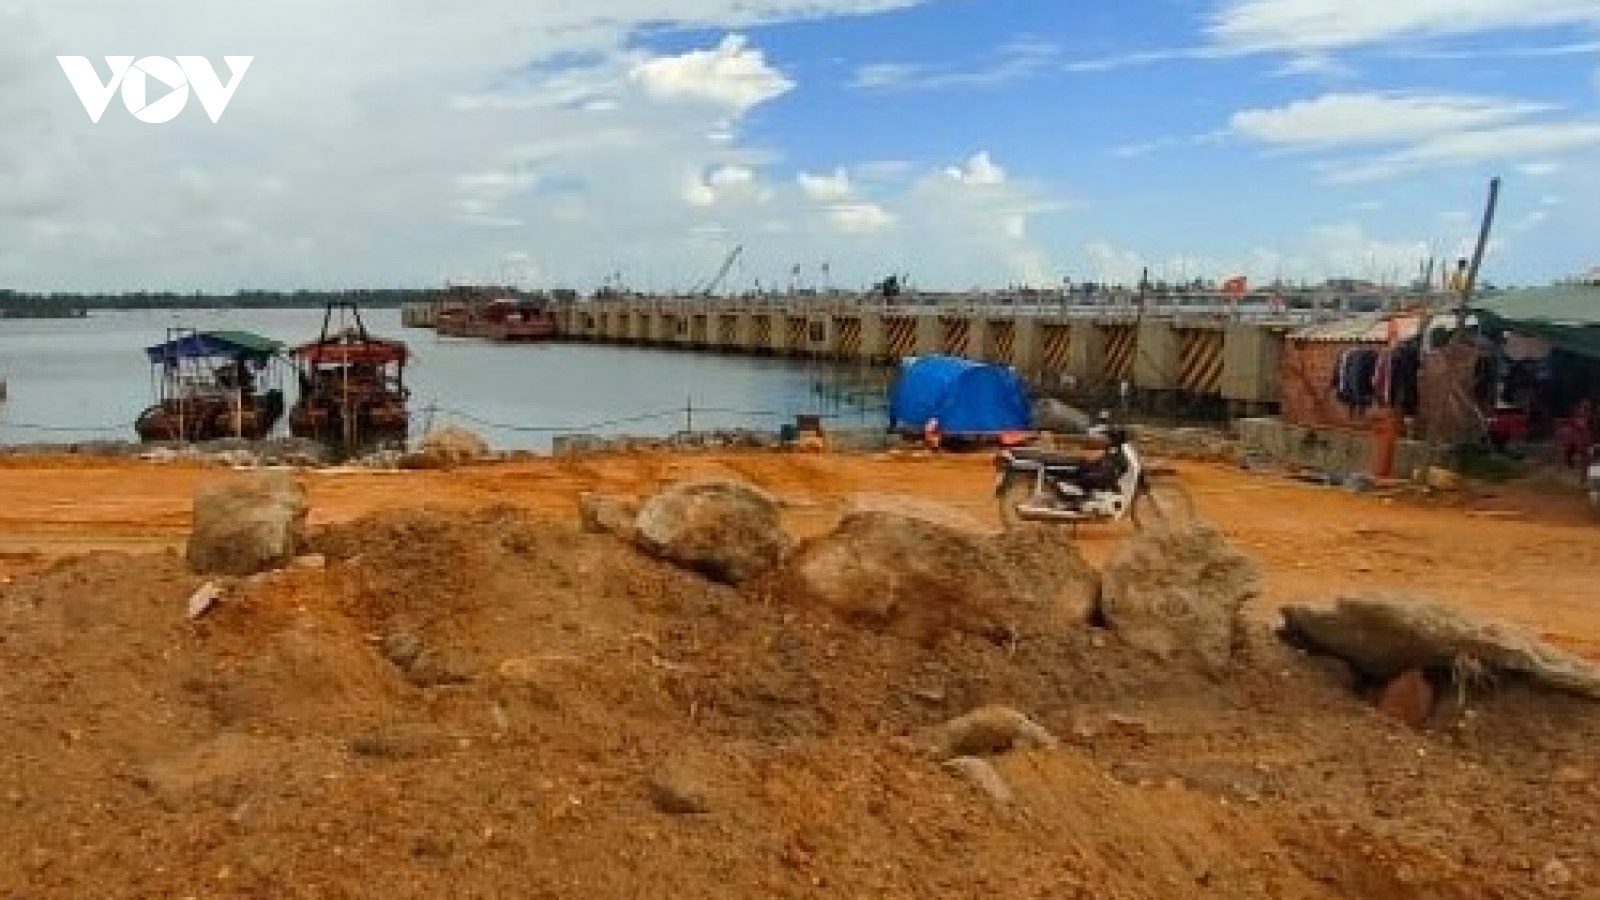 Dự án “Xây dựng, nâng cấp cơ sở hạ tầng nghề cá” ở Thừa Thiên Huế chậm tiến độ